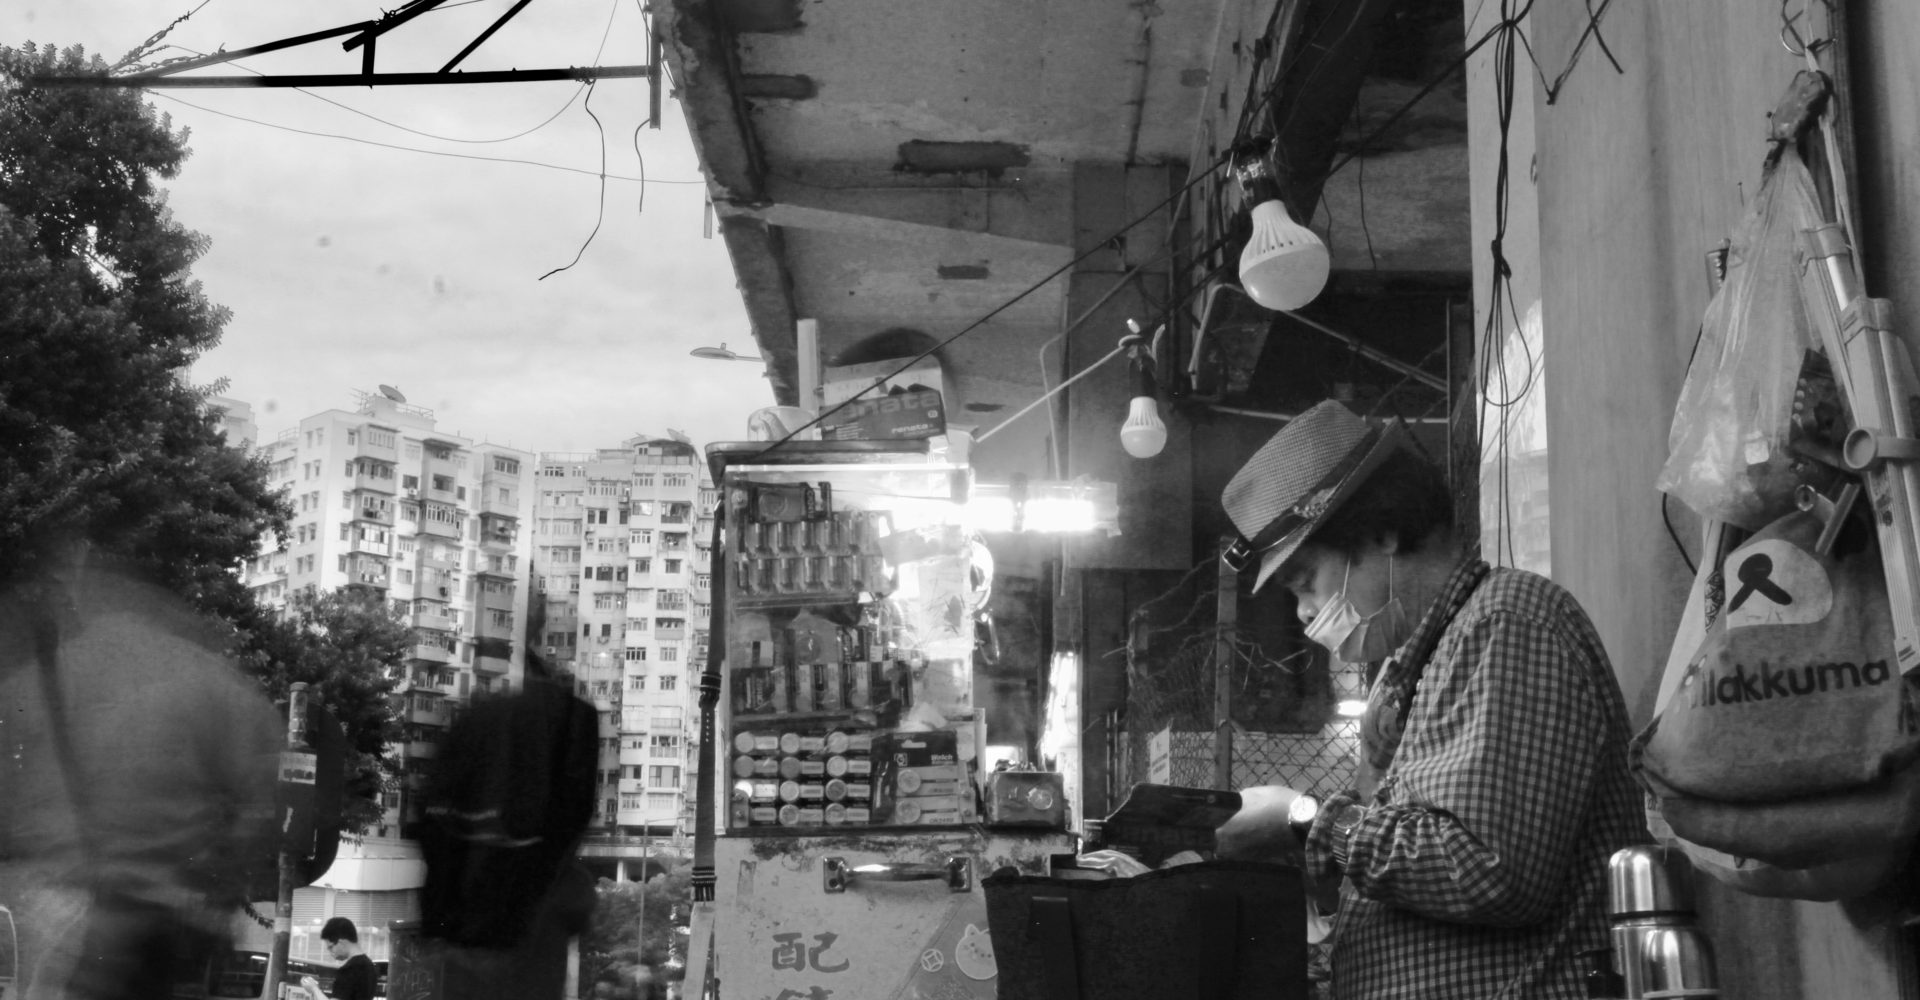 舊香港文化──街頭鐘錶匠的生活（黃玲燕） – 新傳網